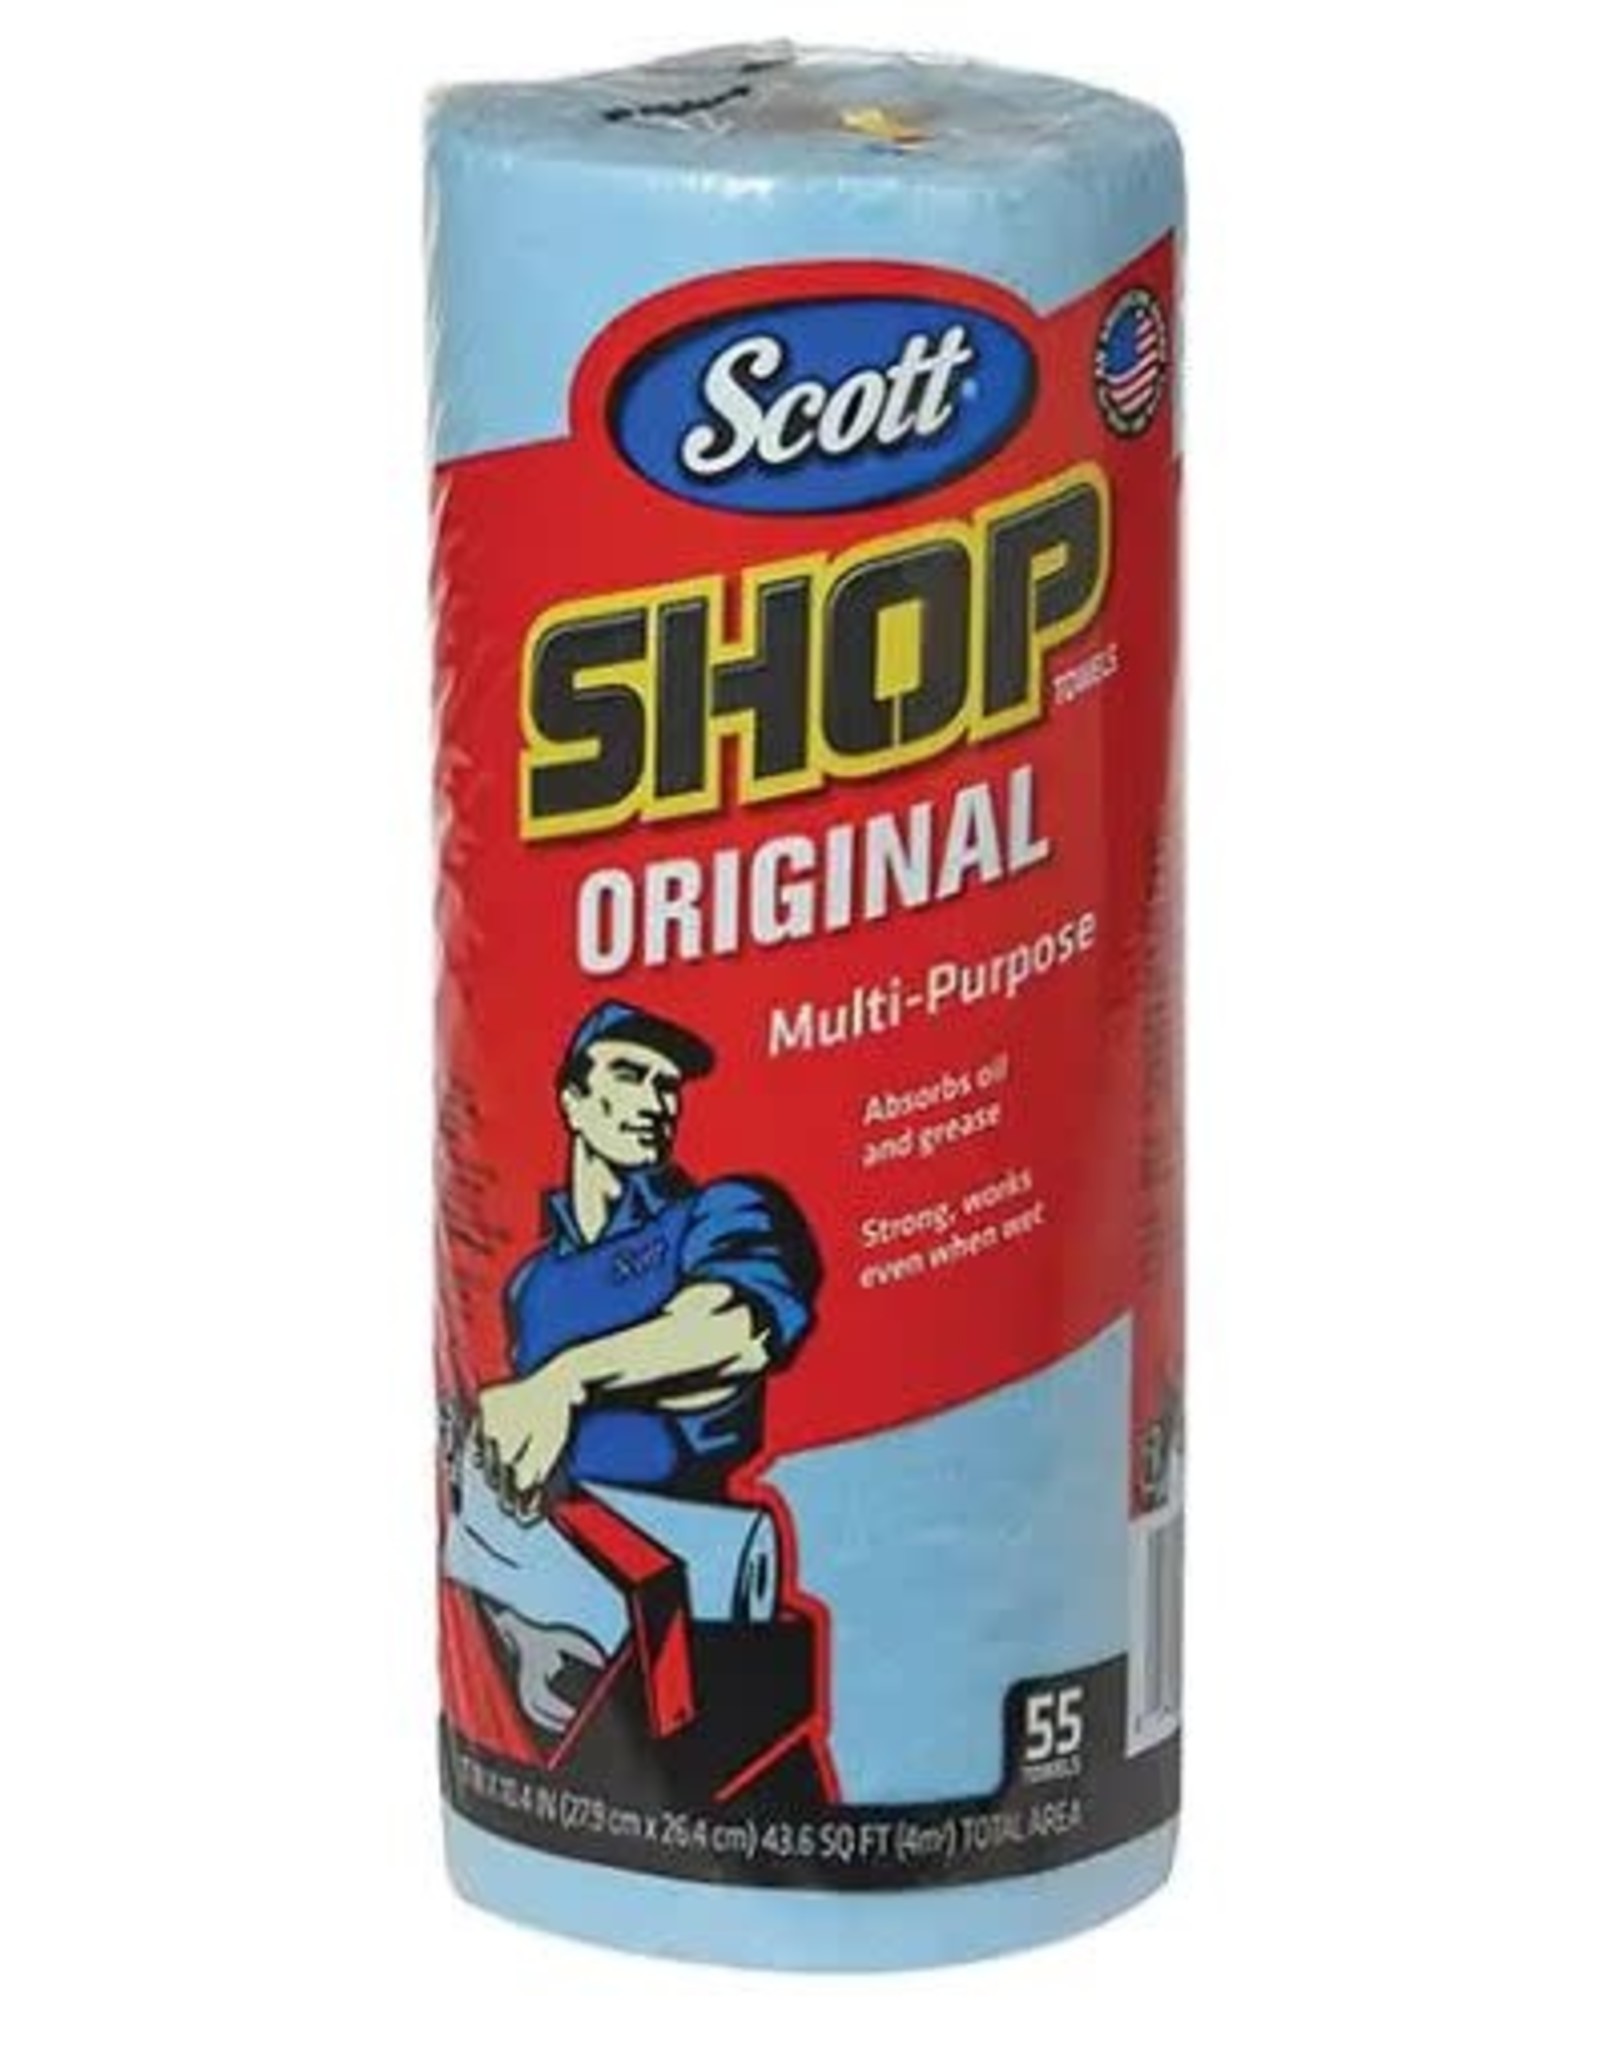 Scott Original Shop Towels, 55/Roll